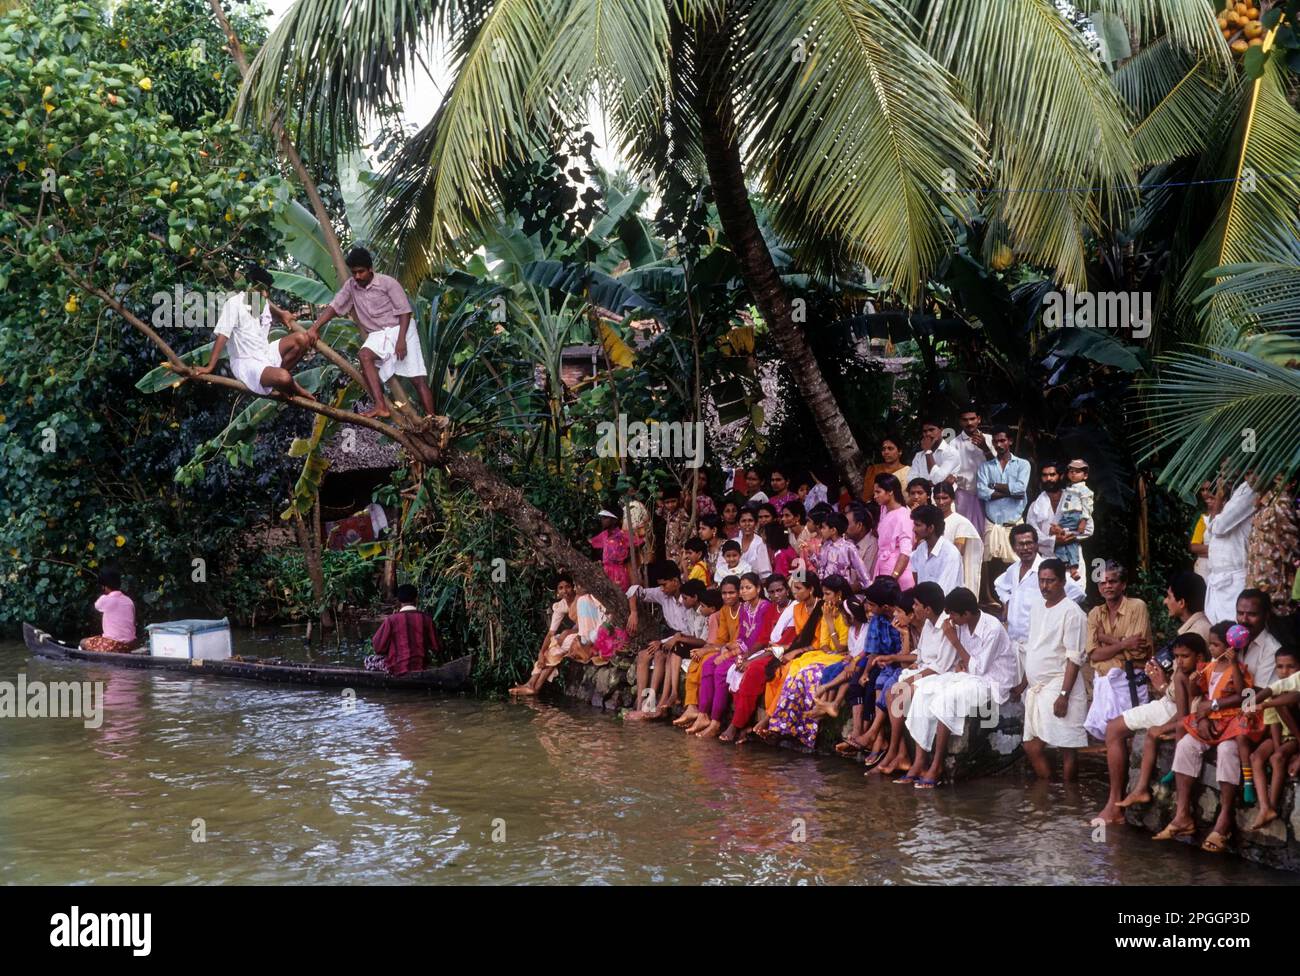 Public regardant la course de bateau Snake pendant le festival Onam à Payippad près de Haripad, Kerala, Inde, Asie Banque D'Images